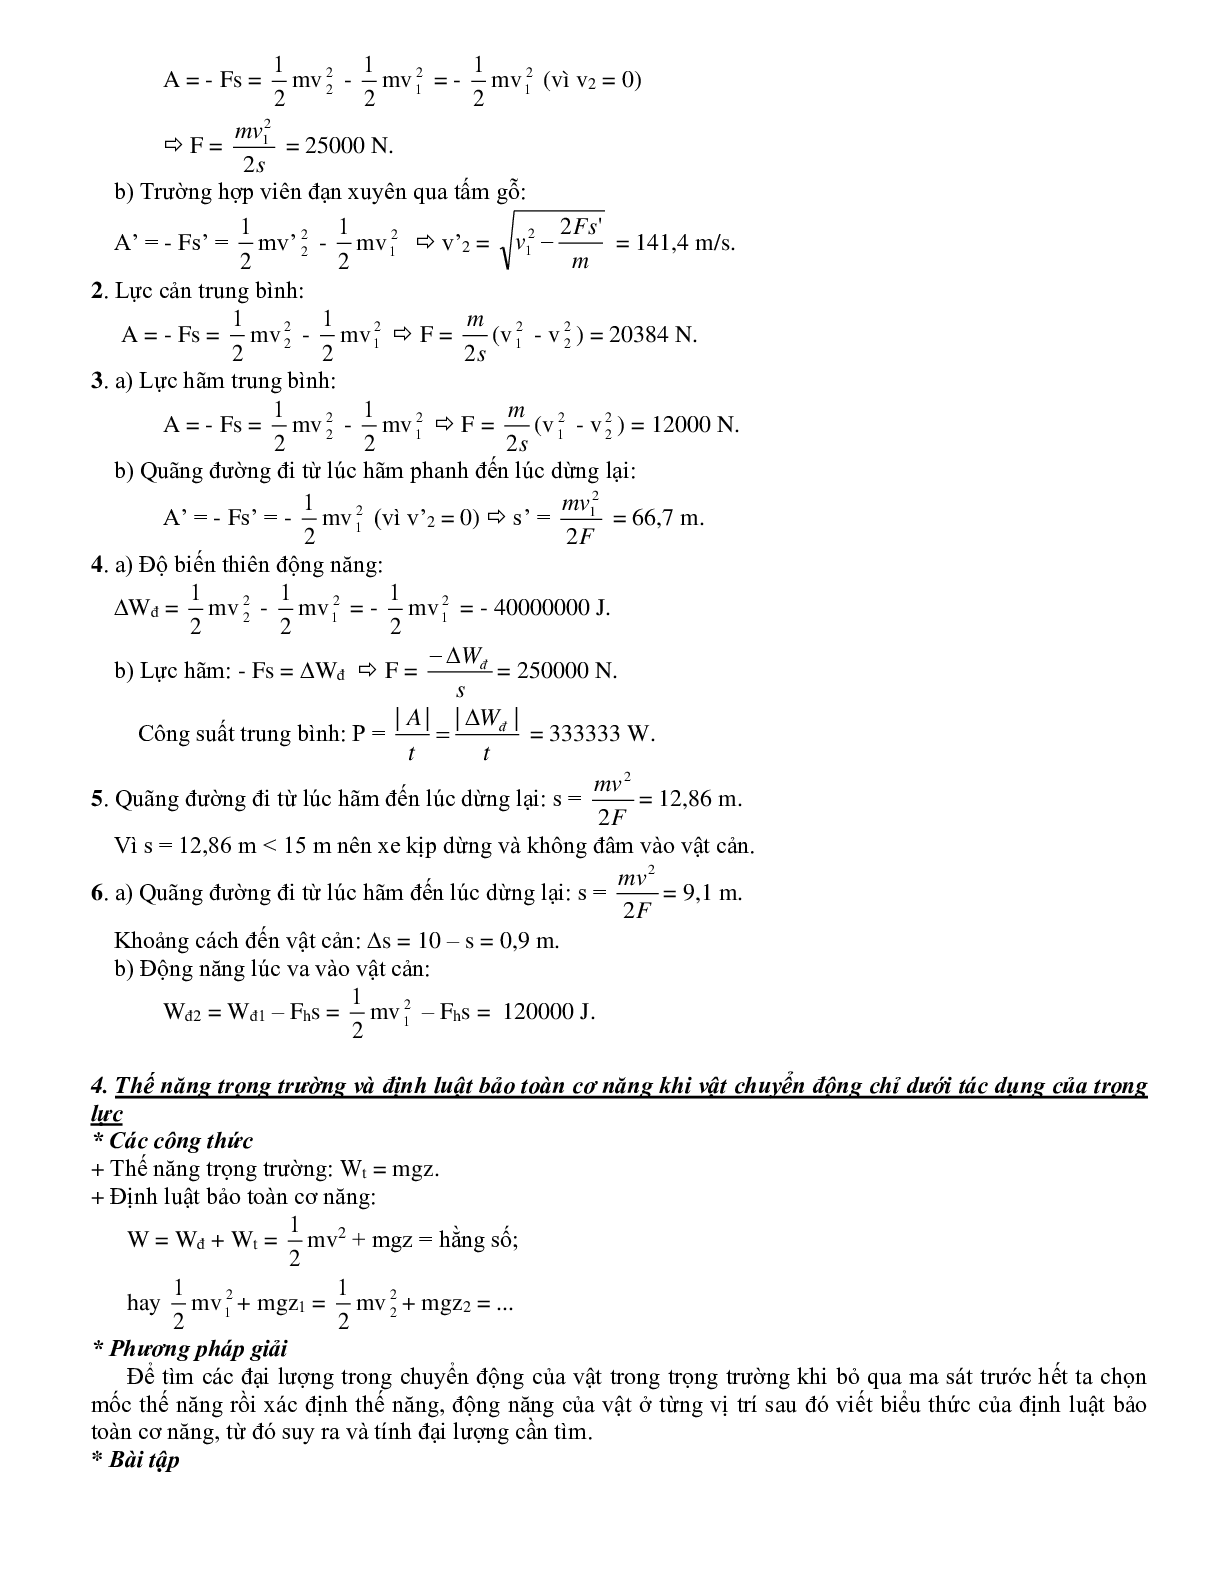 Chuyên đề Các định luật bảo toàn môn Vật lý lớp 10 (trang 6)